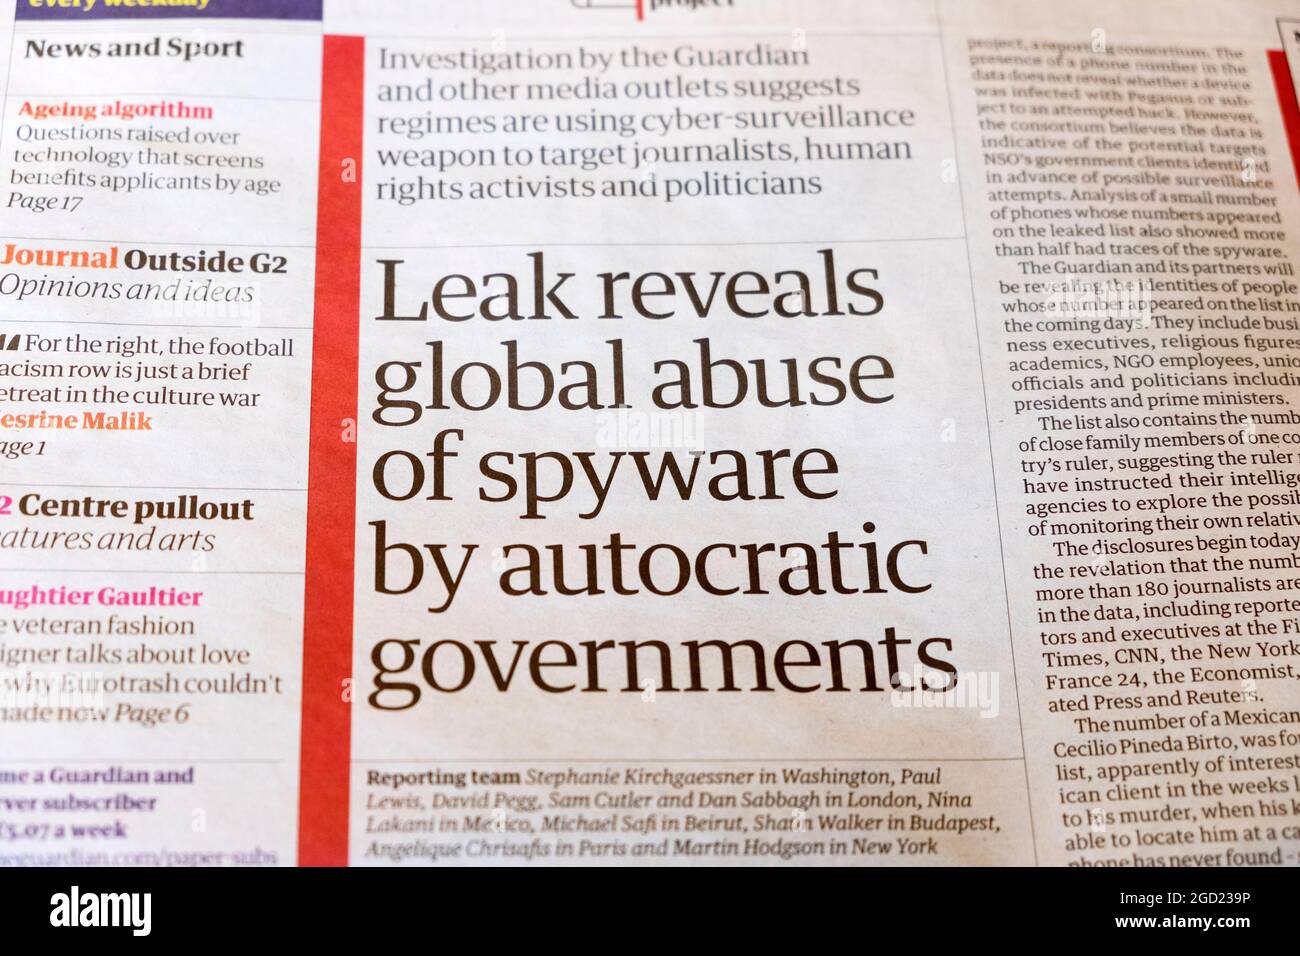 "La fuga rivela l'abuso globale di spyware da parte dei governi autocratici" 19 luglio 2021 articolo sul titolo del giornale Guardian a Londra, Inghilterra Foto Stock